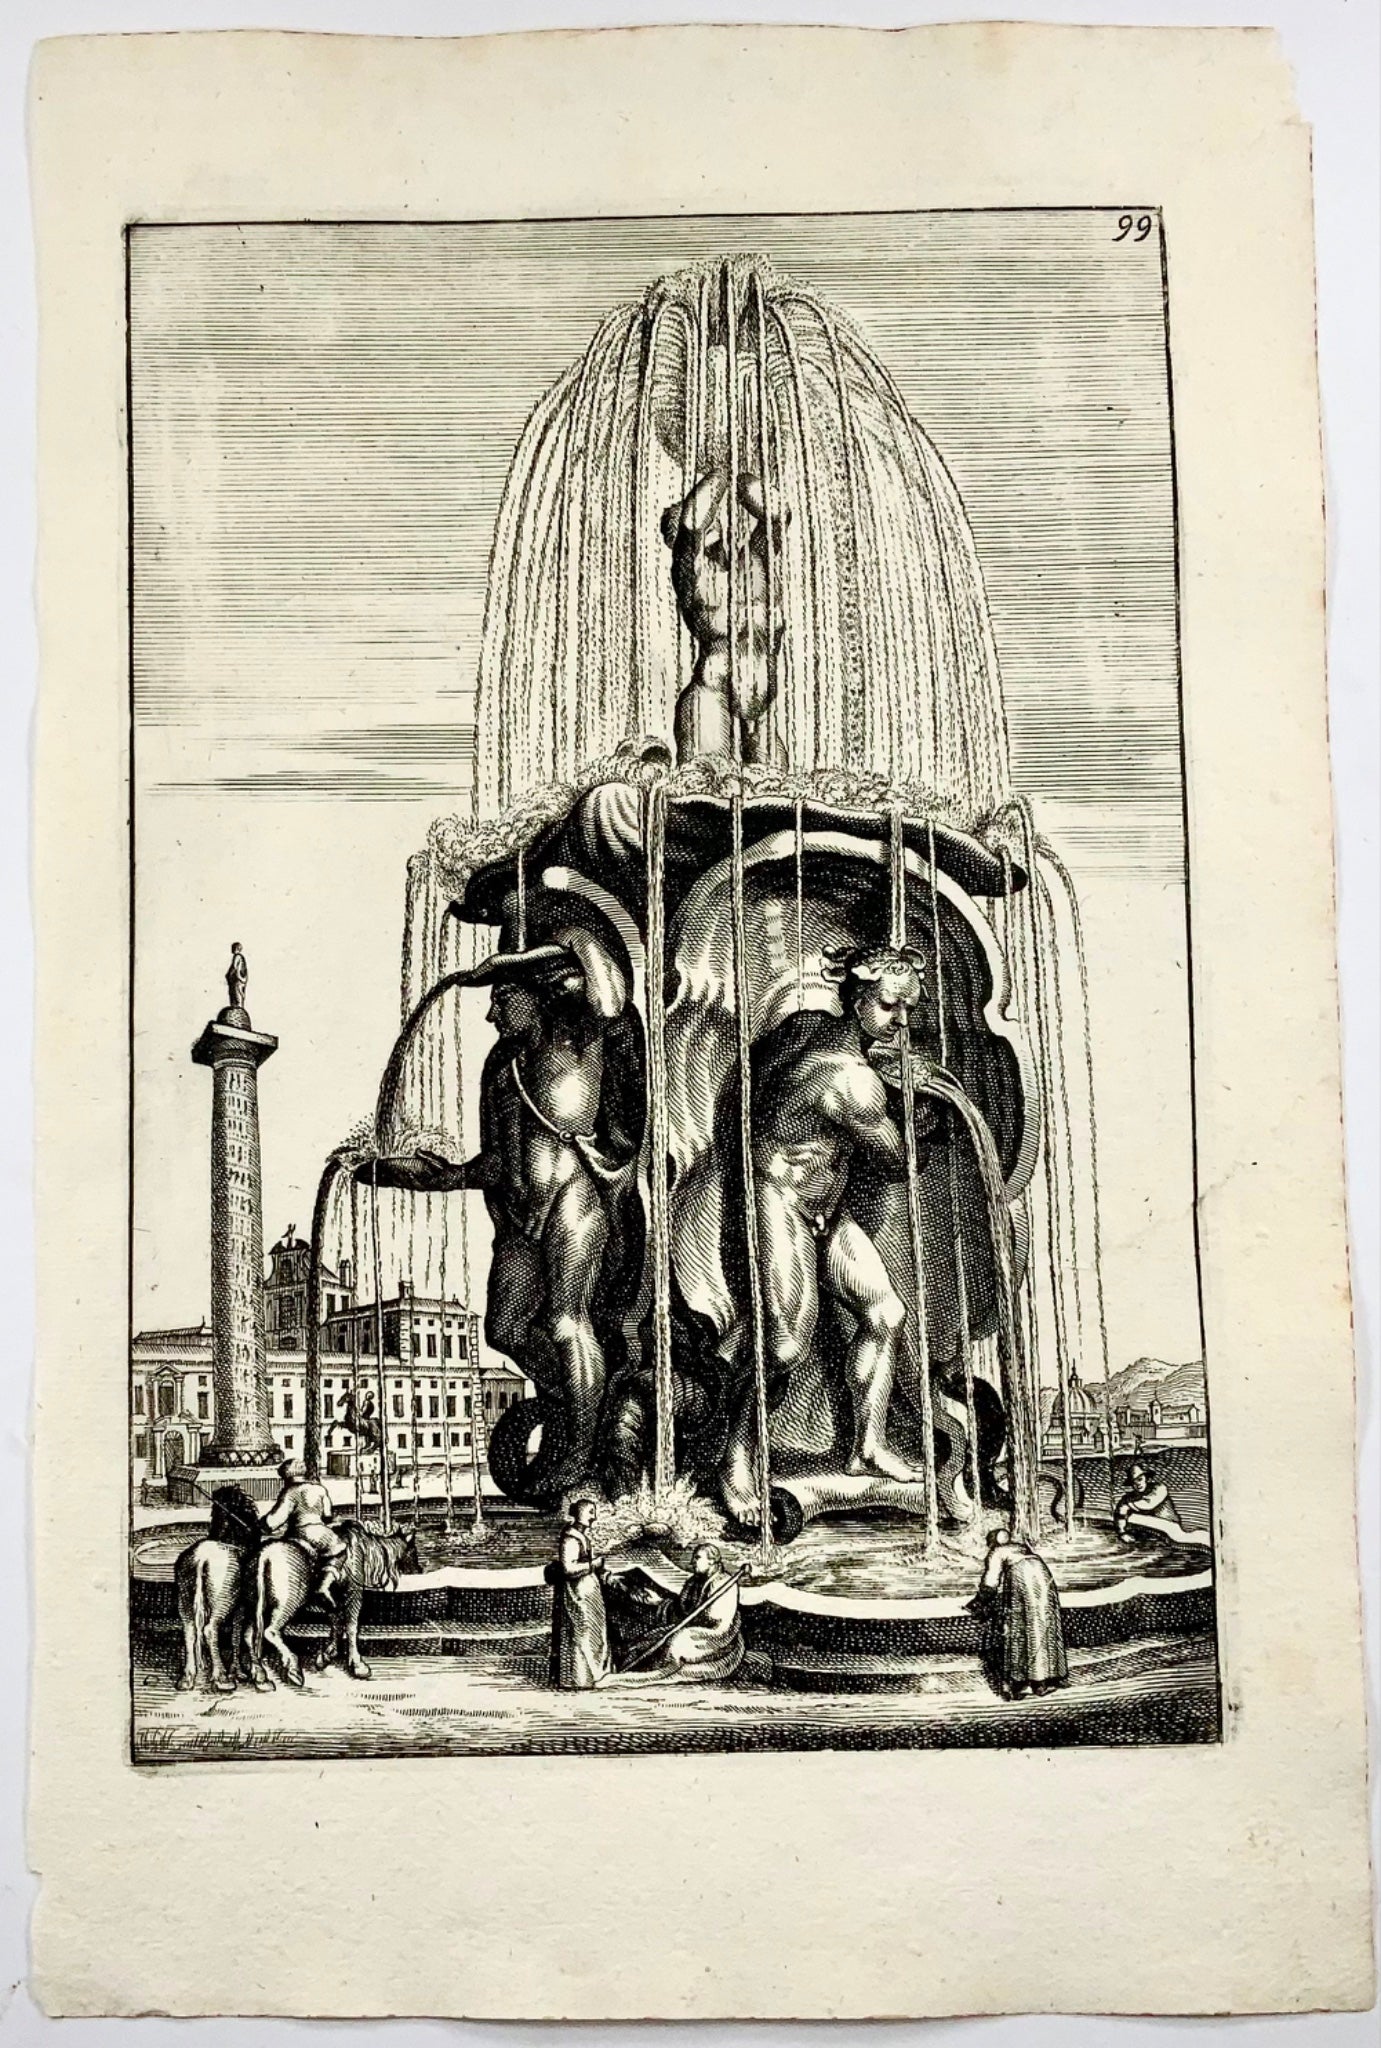 1662 Decorative baroque fountain with Roman column, Boeckler, garden design